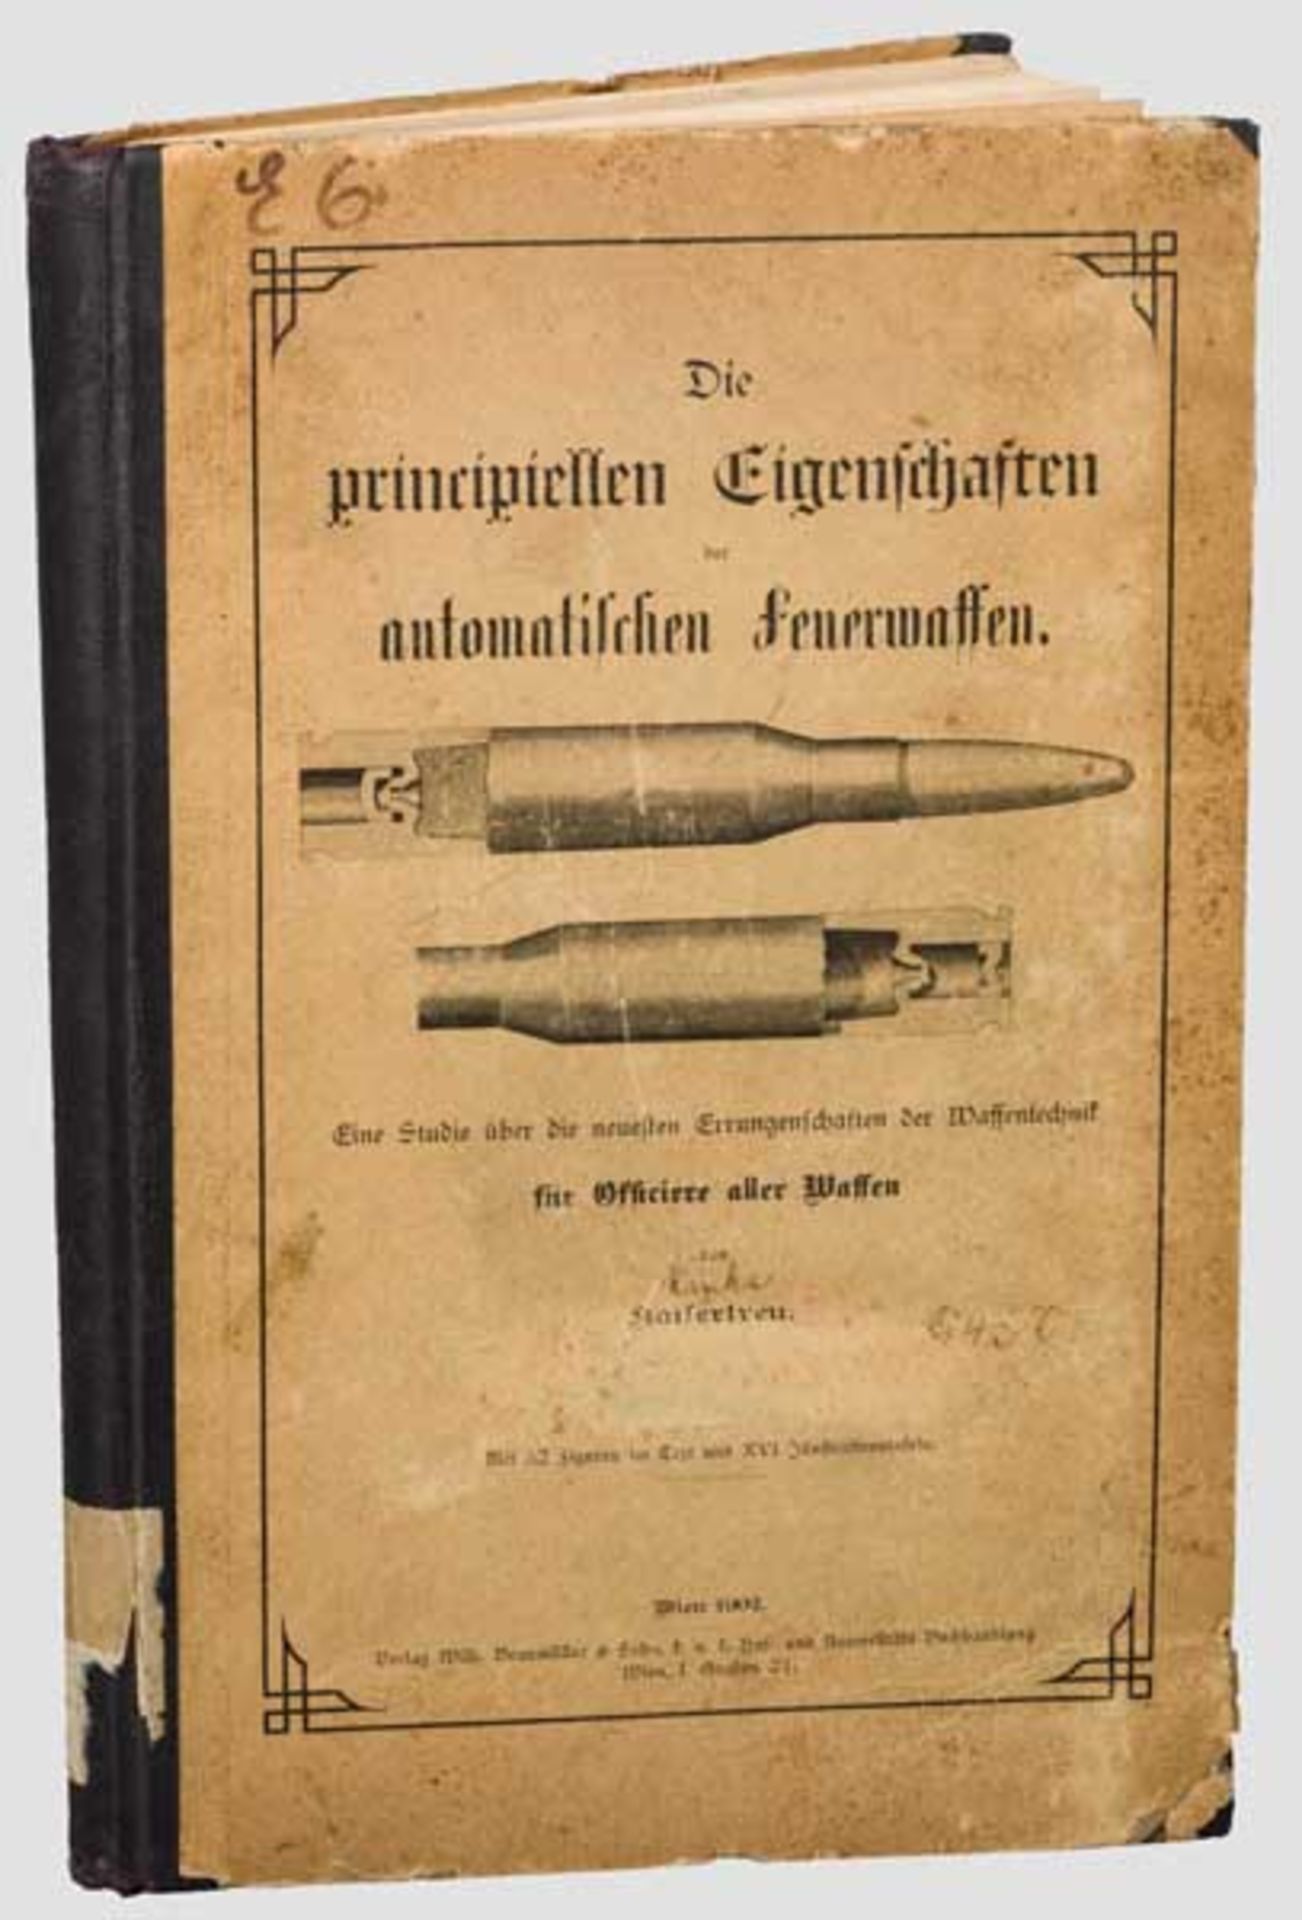 Karel Krnka, "Die prinzipiellen Eigenschaften der automatischen Feuerwaffen" Originalausgabe Wien